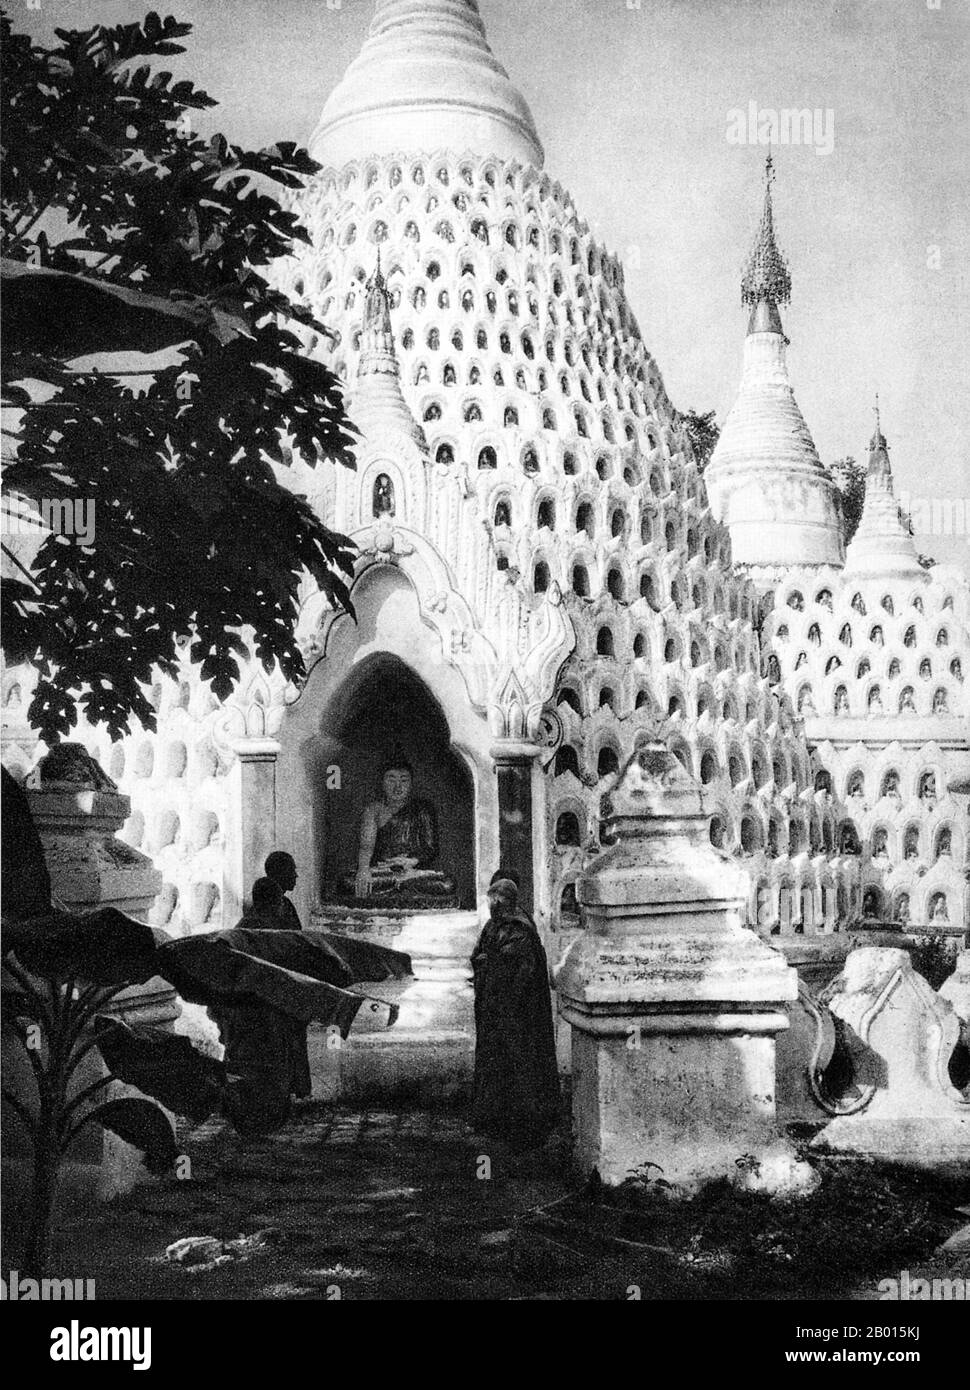 Birma/Myanmar: Chedis in einem Kloster in Ava, c. 1920er Jahre. Beachten Sie, dass es viele Nischen auf den Stupas gibt, um Opfergaben und kleine Buddha-Bilder zu platzieren. AVA war von 1364 bis 1841 die Hauptstadt Burmas und wurde von König Thadominbya auf einer künstlichen Insel am Zusammenfluss von Irrawaddy und Myitnge gegründet, die durch Graben eines Kanals entstand, der die beiden Flüsse miteinander verband. Zuvor war Sagaing Hauptstadt gewesen, aber nachdem Sagaing an die Shan fiel, zog das Gericht über den Fluss nach Ava. Stockfoto